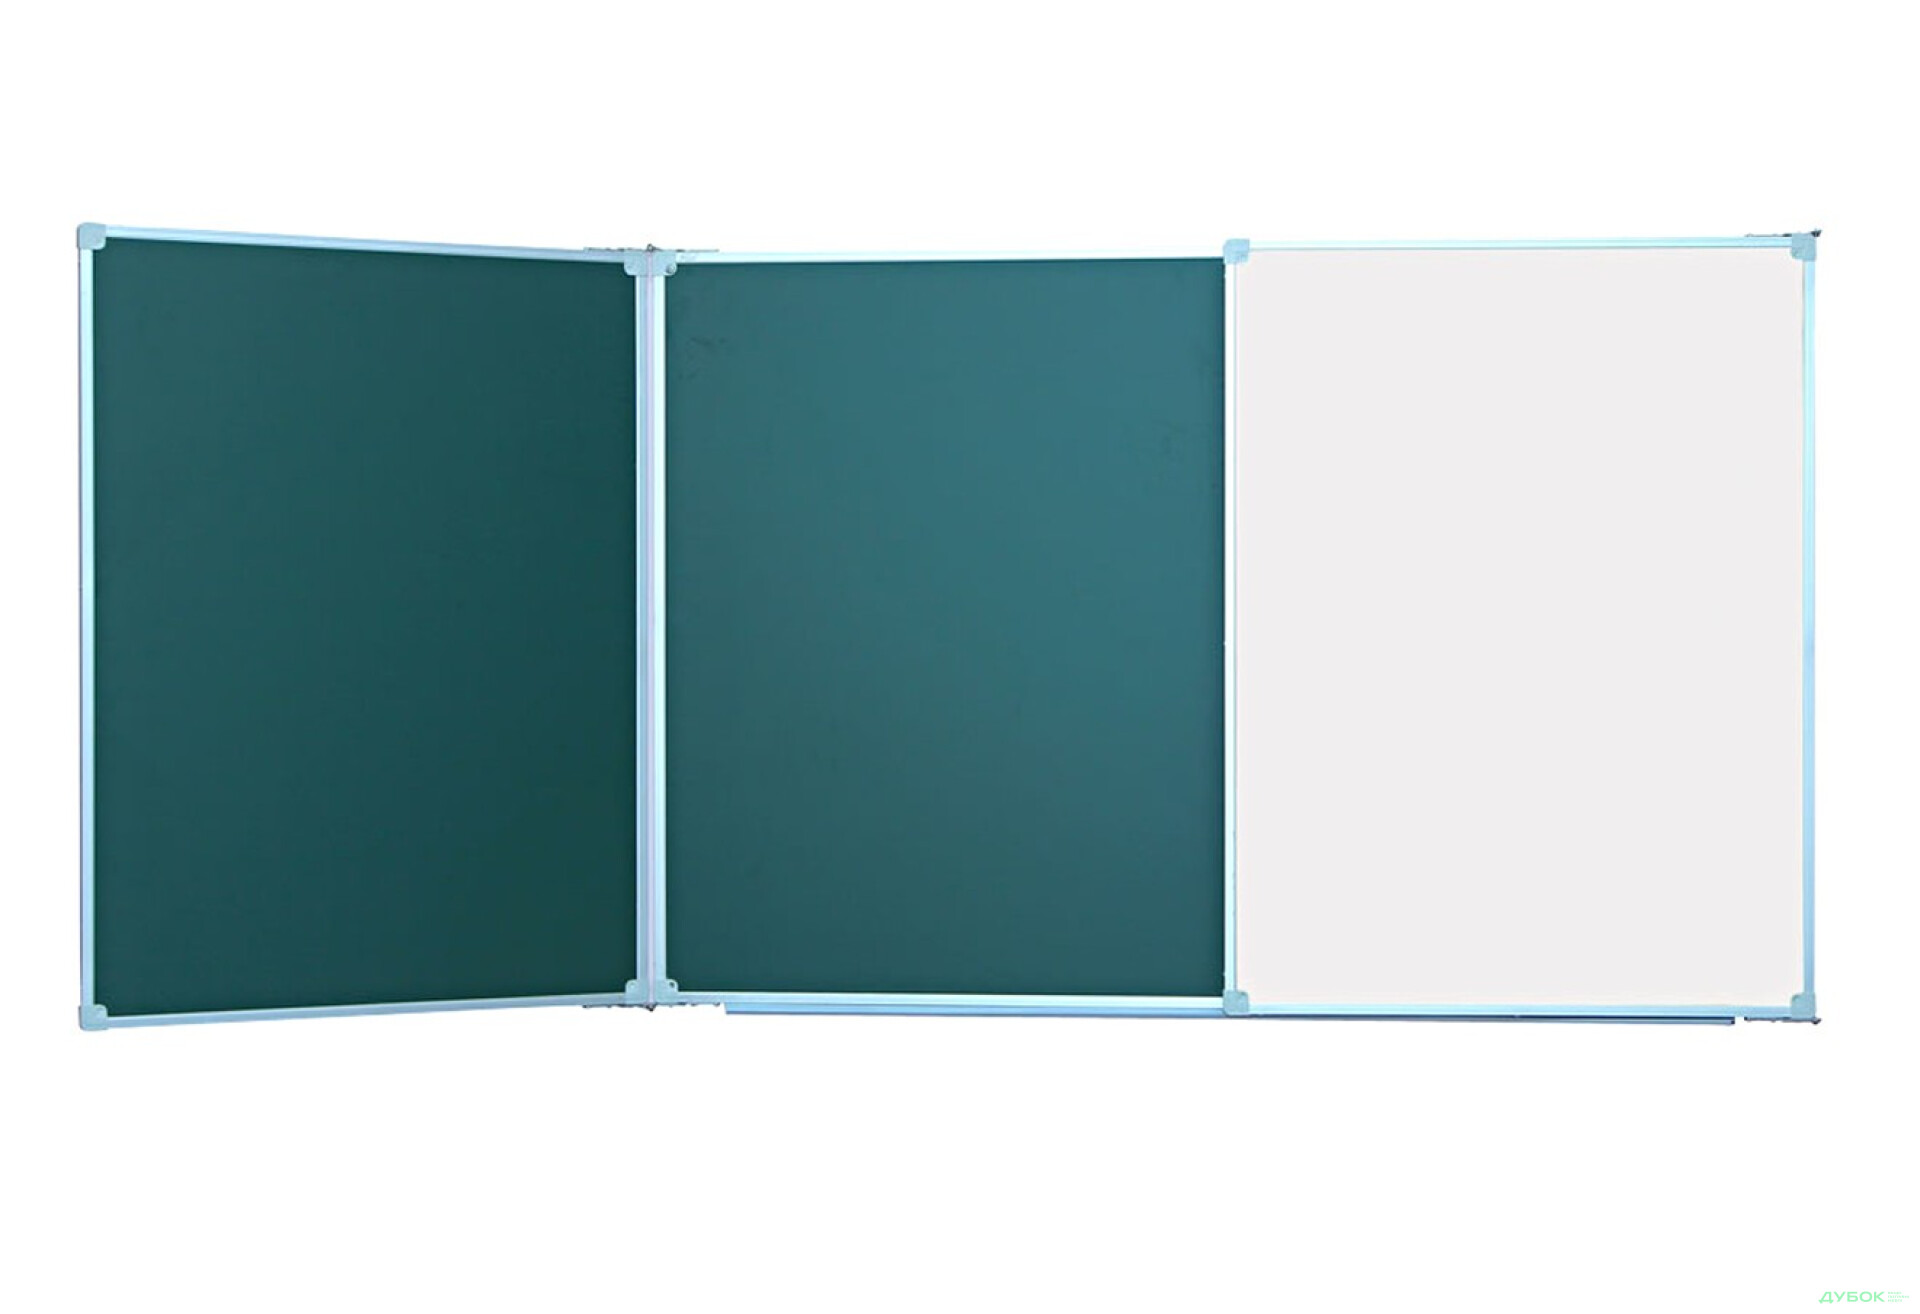 Фото 1 - Дошка аудиторна 3-х створчата 3х1м комб. (зелена+біла), арт. 33918МБ Геліка